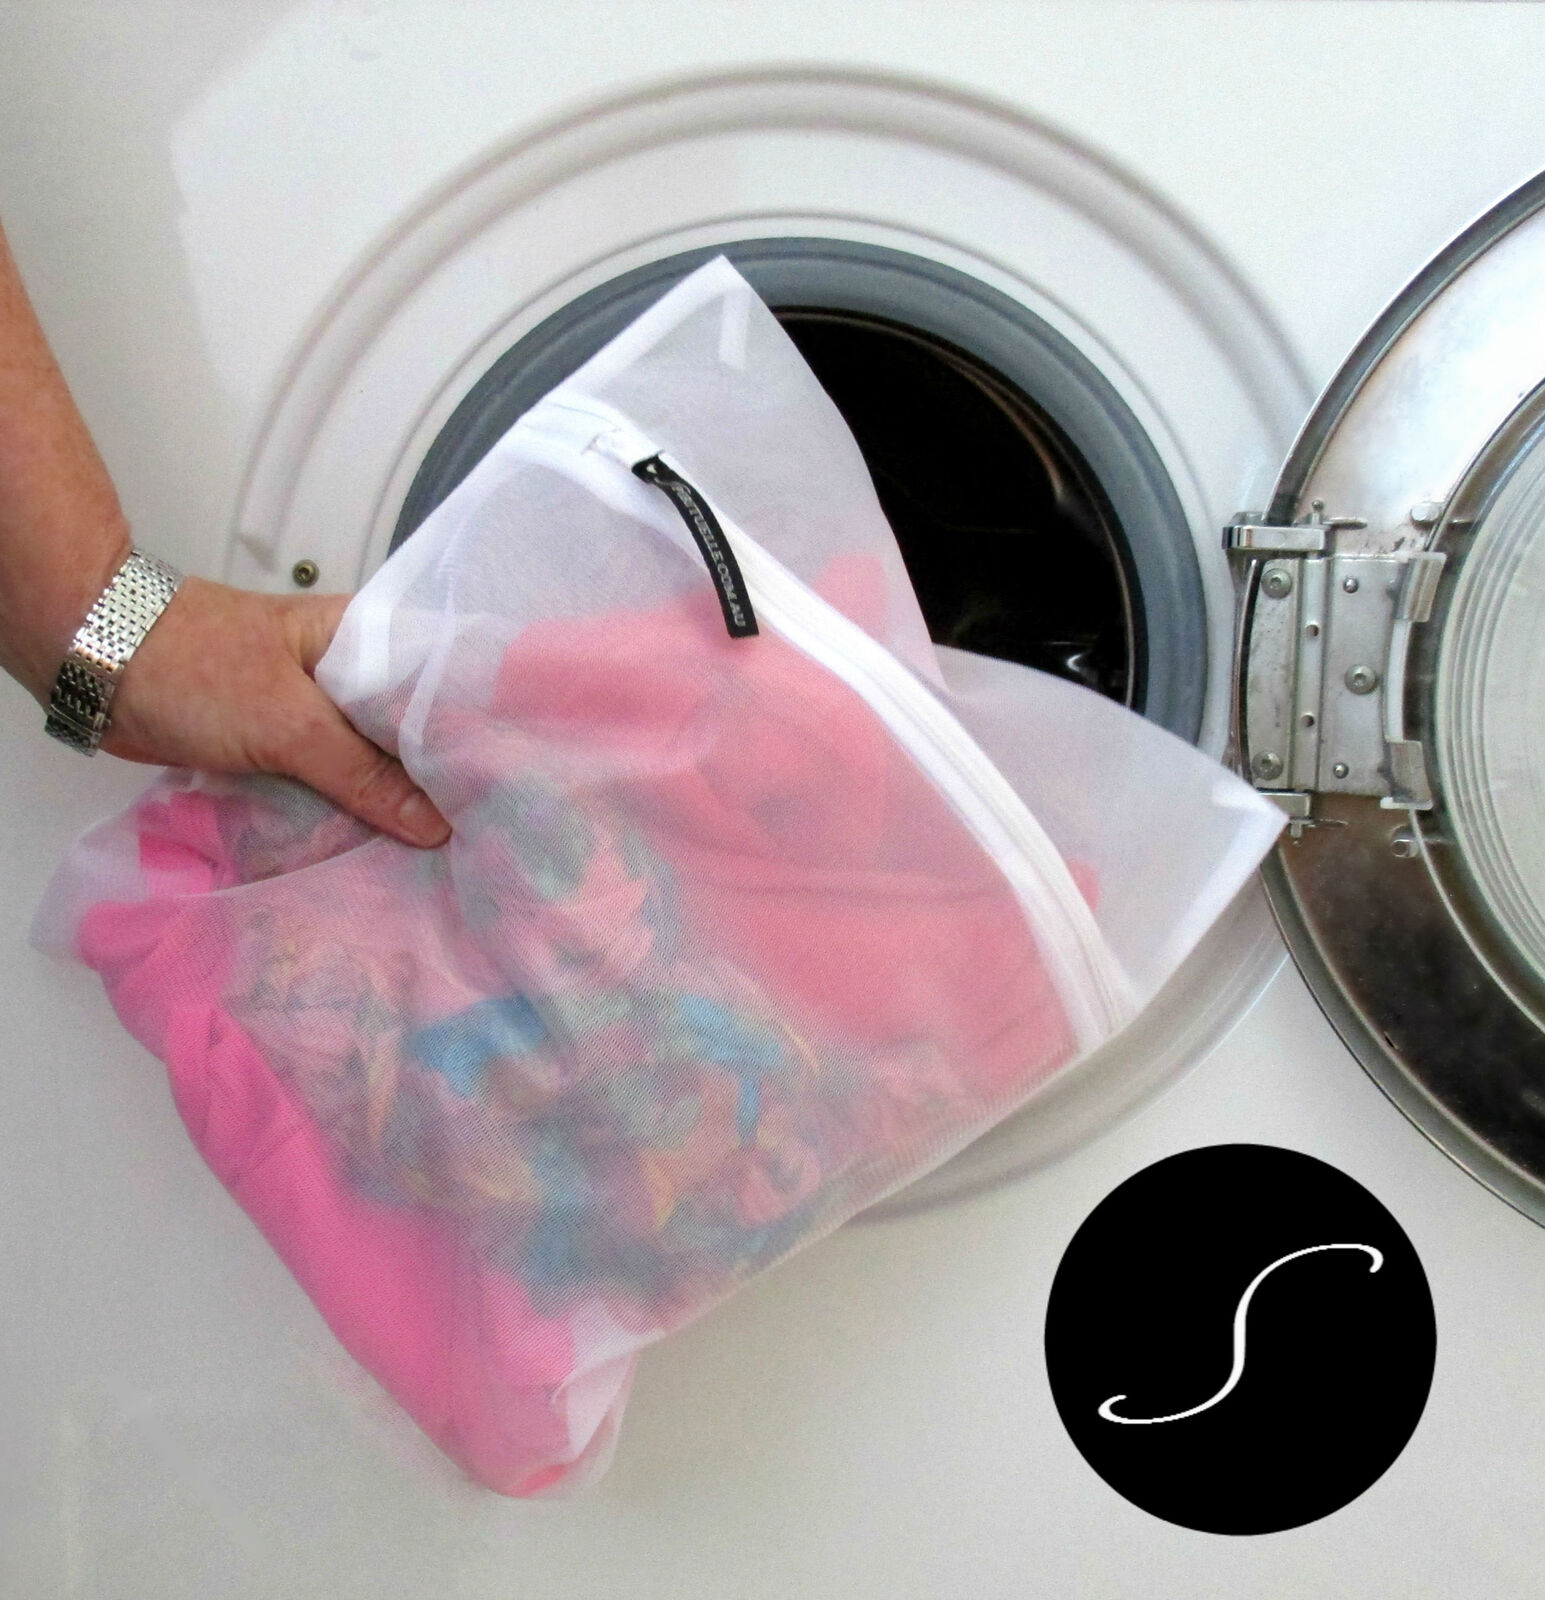 laundry bag for washing machine